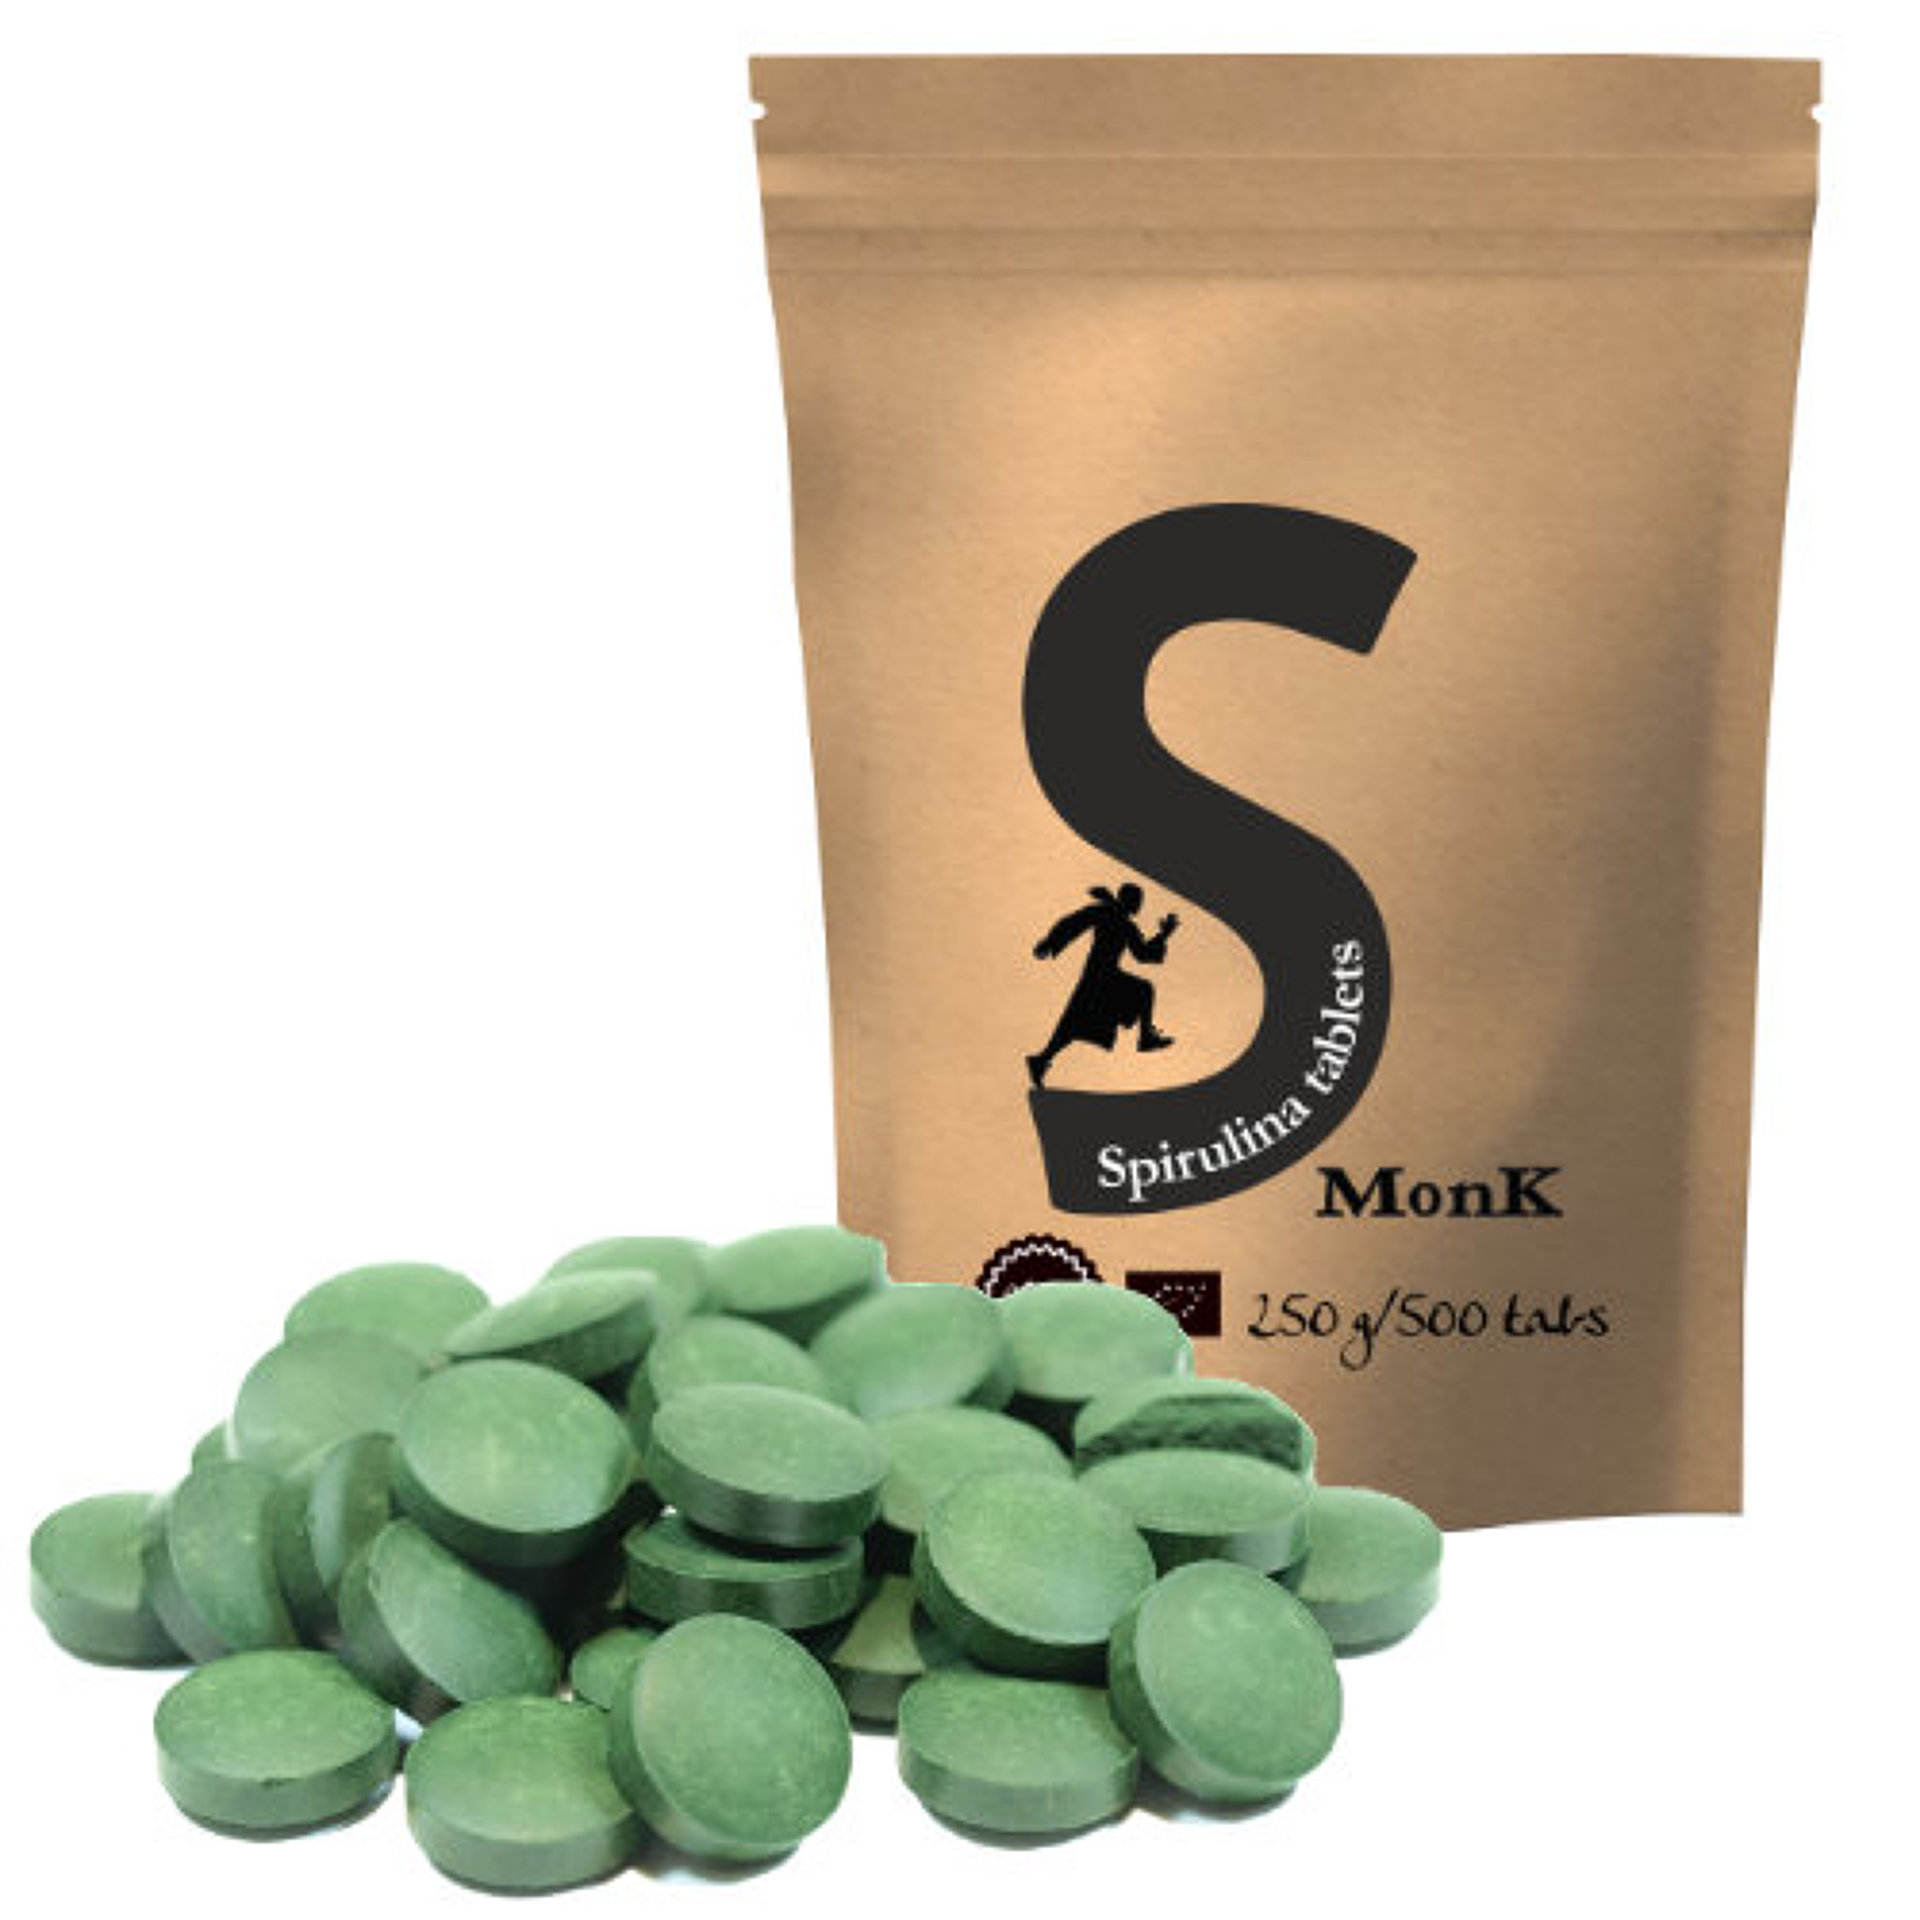 Monk Spirulina 250g/500 tablet